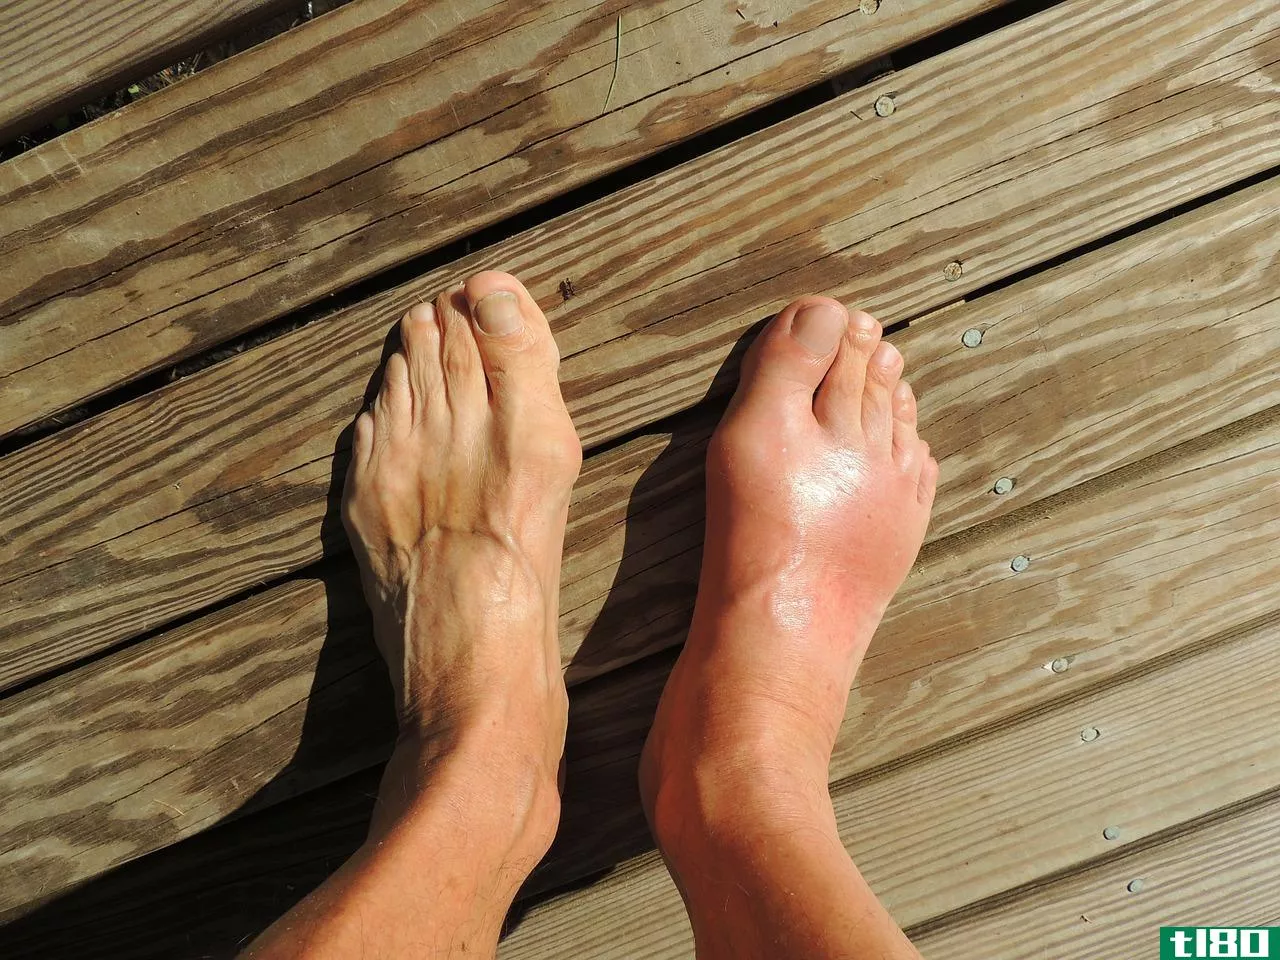 痛风(gout)和类风湿性关节炎(rheumatoid arthritis)的区别